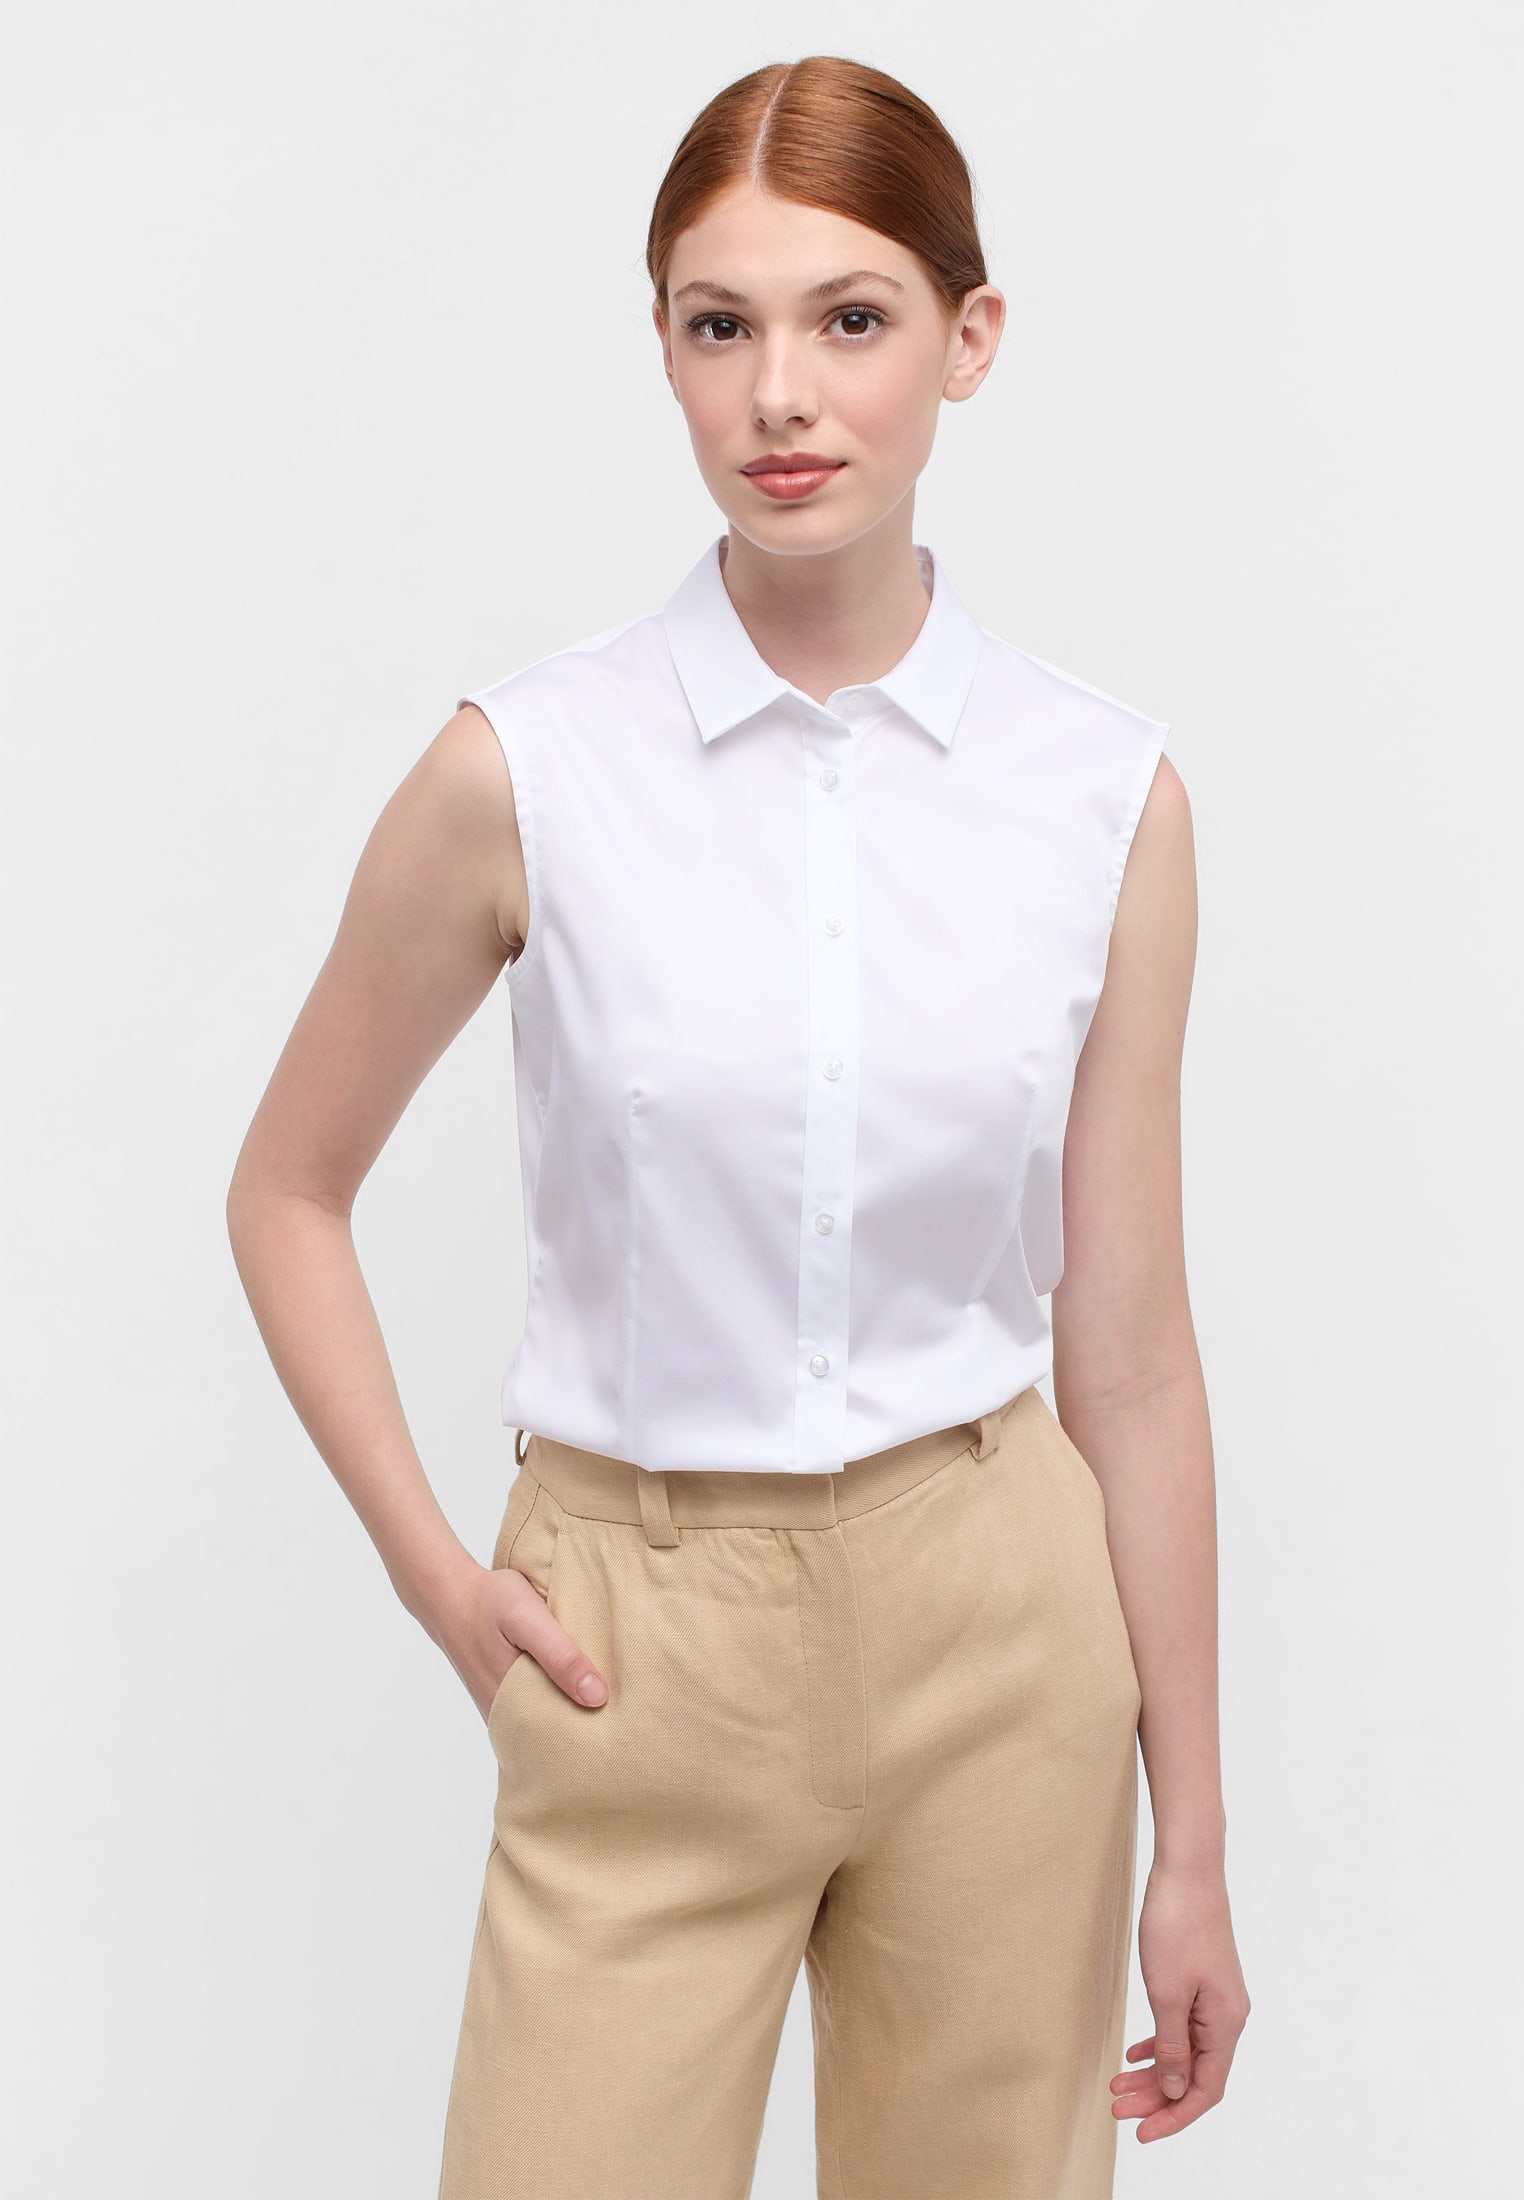 Satin Shirt Bluse in | | unifarben Arm ohne weiß | weiß 2BL03768-00-01-34-sl | 34